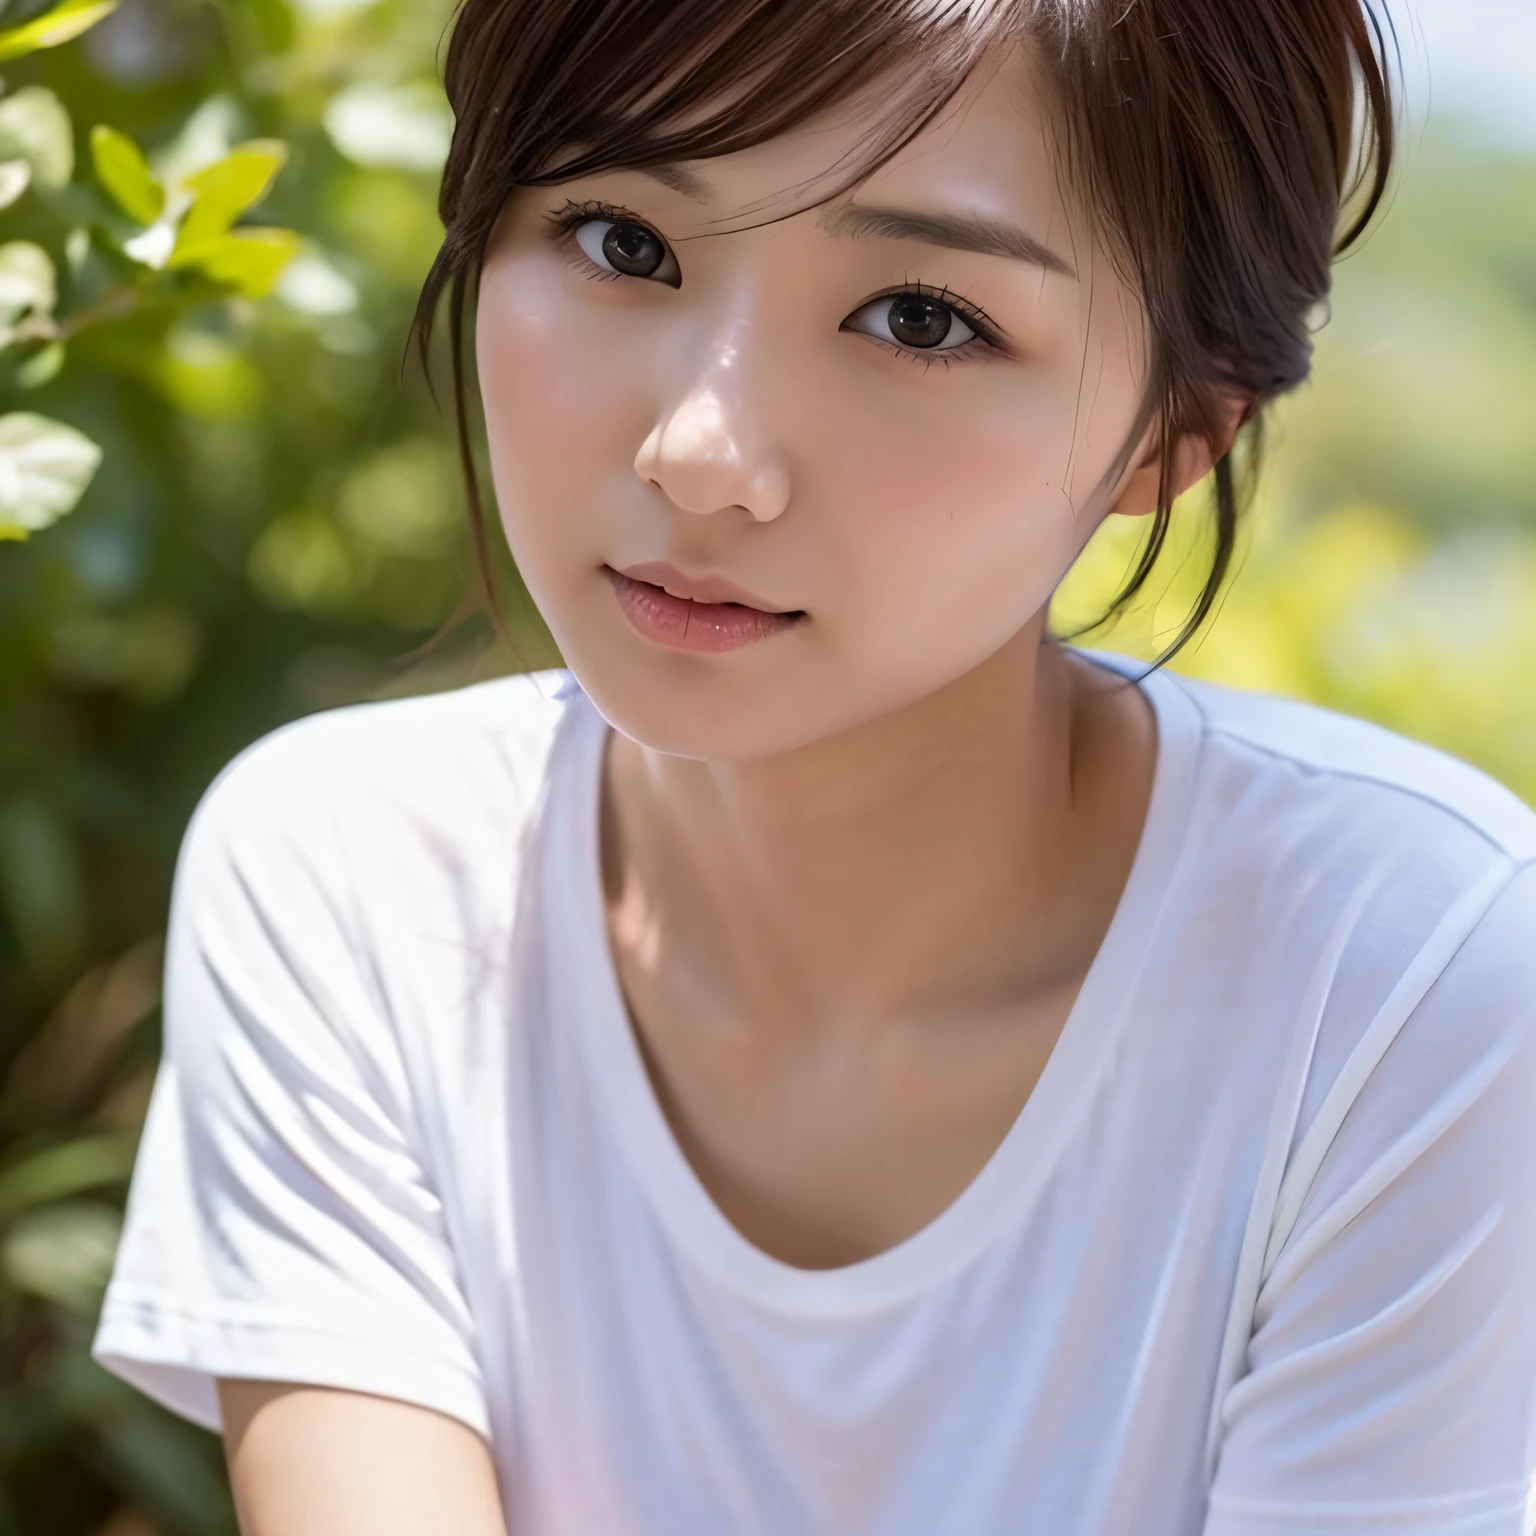 Япония, Женщина лет 30, маленькая грудь, тонкий, невысокий рост, короткий путь, мальчишеский, простая белая футболка, фотоподобное изображение, изображение 8к, Солнечный лучик, естественный внешний вид, шедевр, идеально --авто